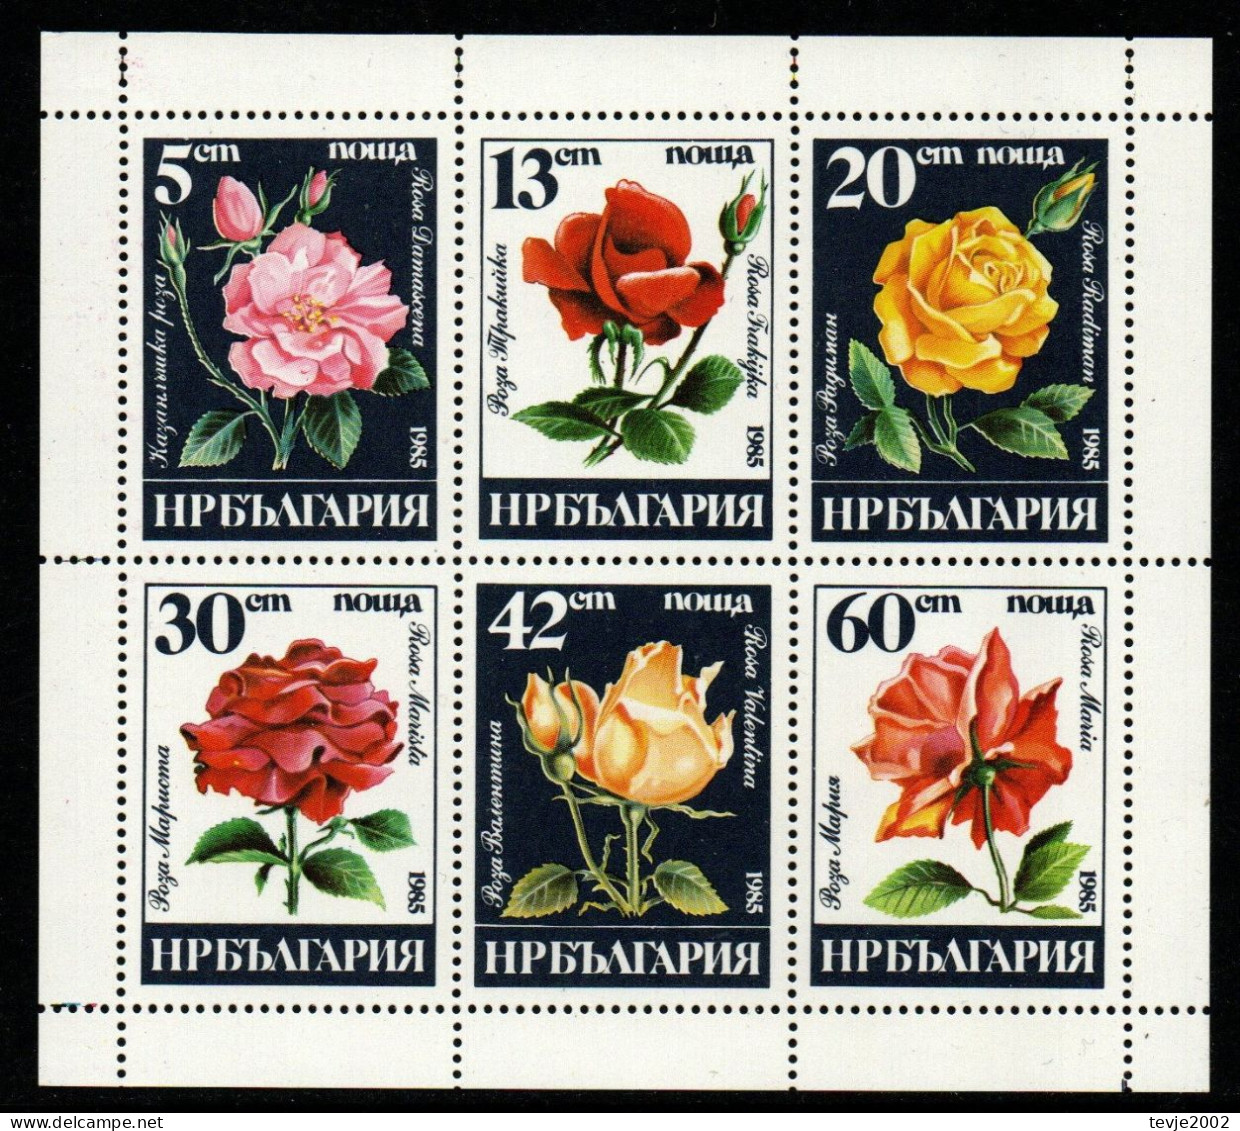 Bulgarien 1985 - Mi.Nr. 3373 - 3378 Kleinbogen - Postfrisch MNH - Blumen Flowers Rosen Roses - Rosas